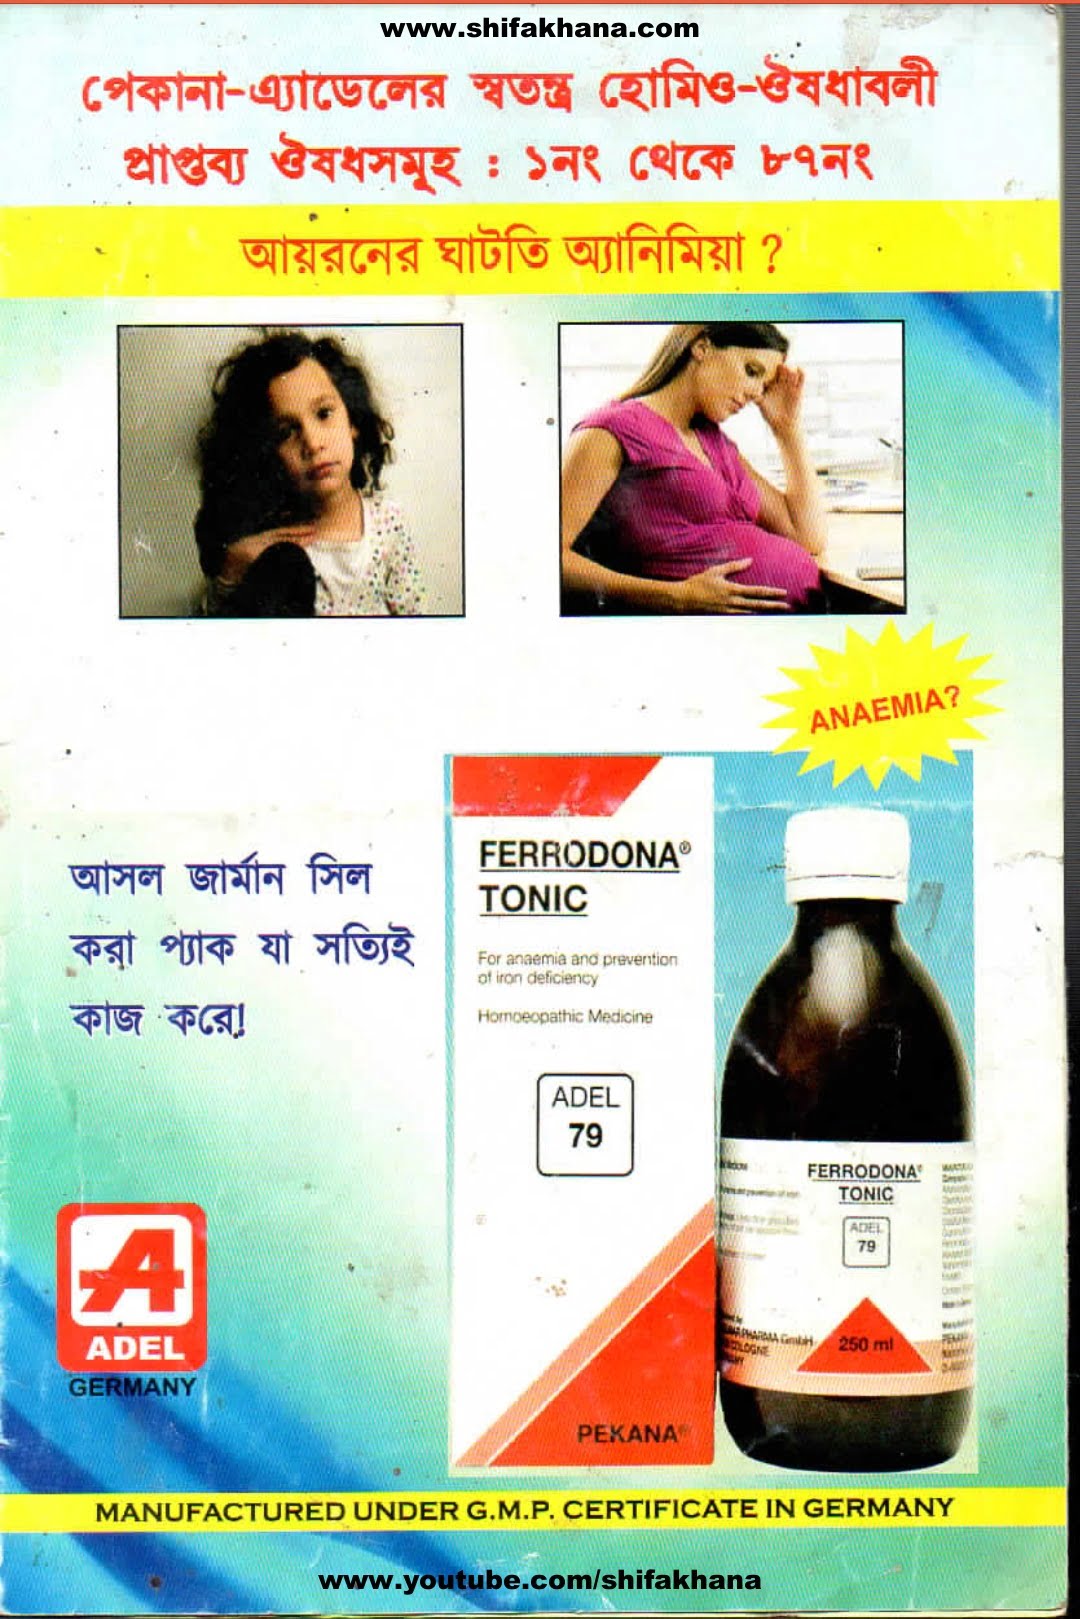 এডেল হোমিওপ্যাথি বাংলা লিফলেট ডাউনলোড |Adel homeopathic Bengali leaflet pdf download